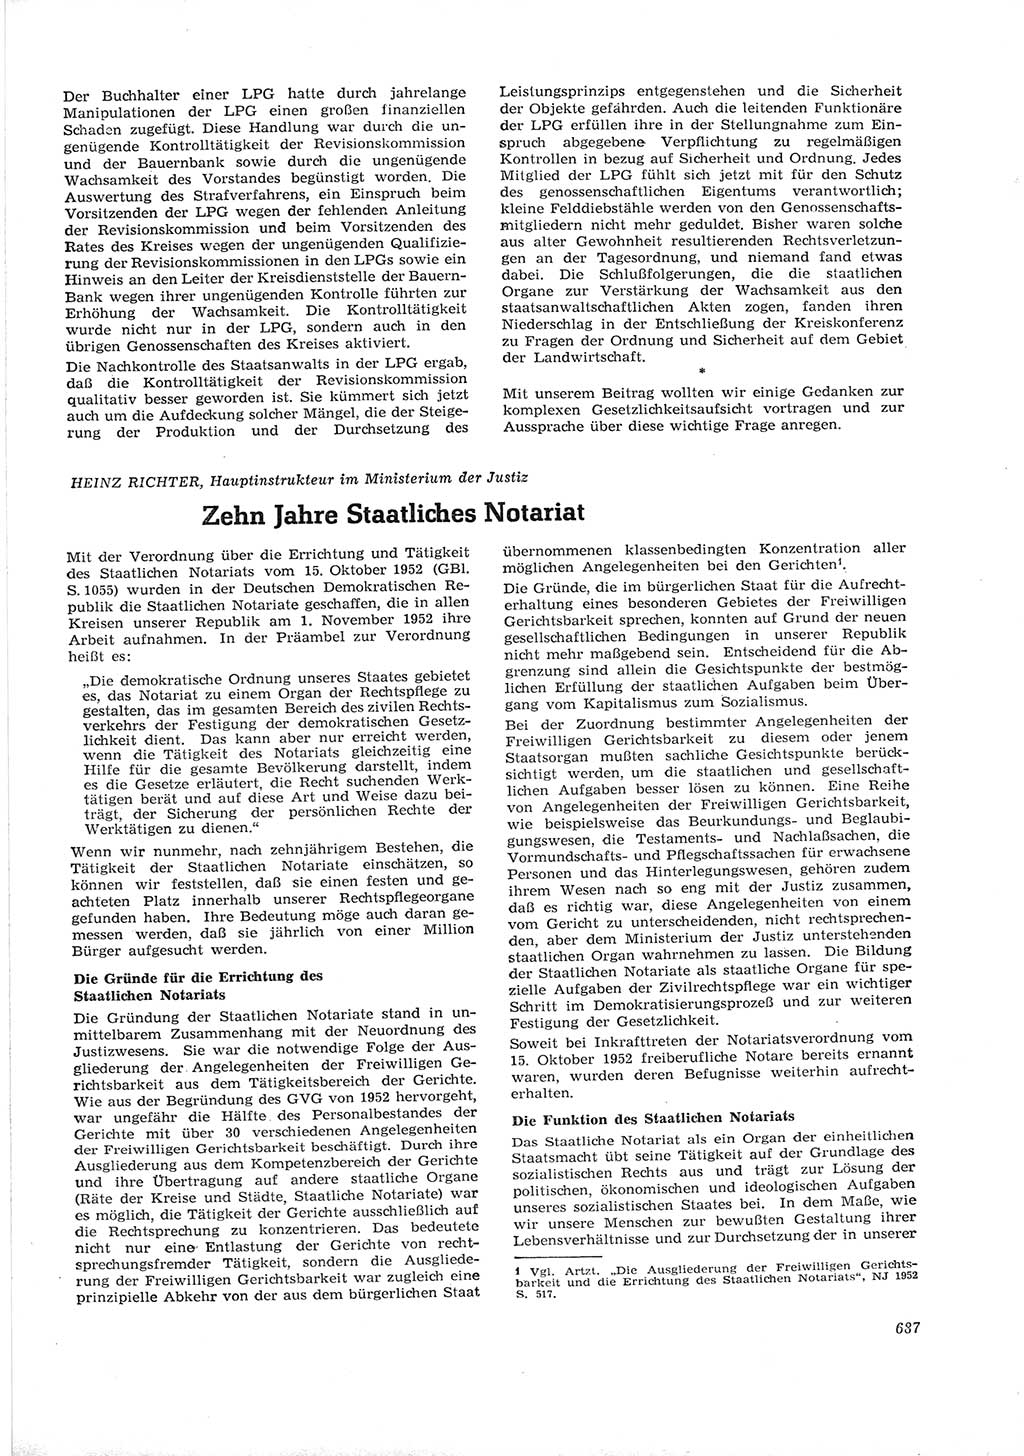 Neue Justiz (NJ), Zeitschrift für Recht und Rechtswissenschaft [Deutsche Demokratische Republik (DDR)], 16. Jahrgang 1962, Seite 687 (NJ DDR 1962, S. 687)